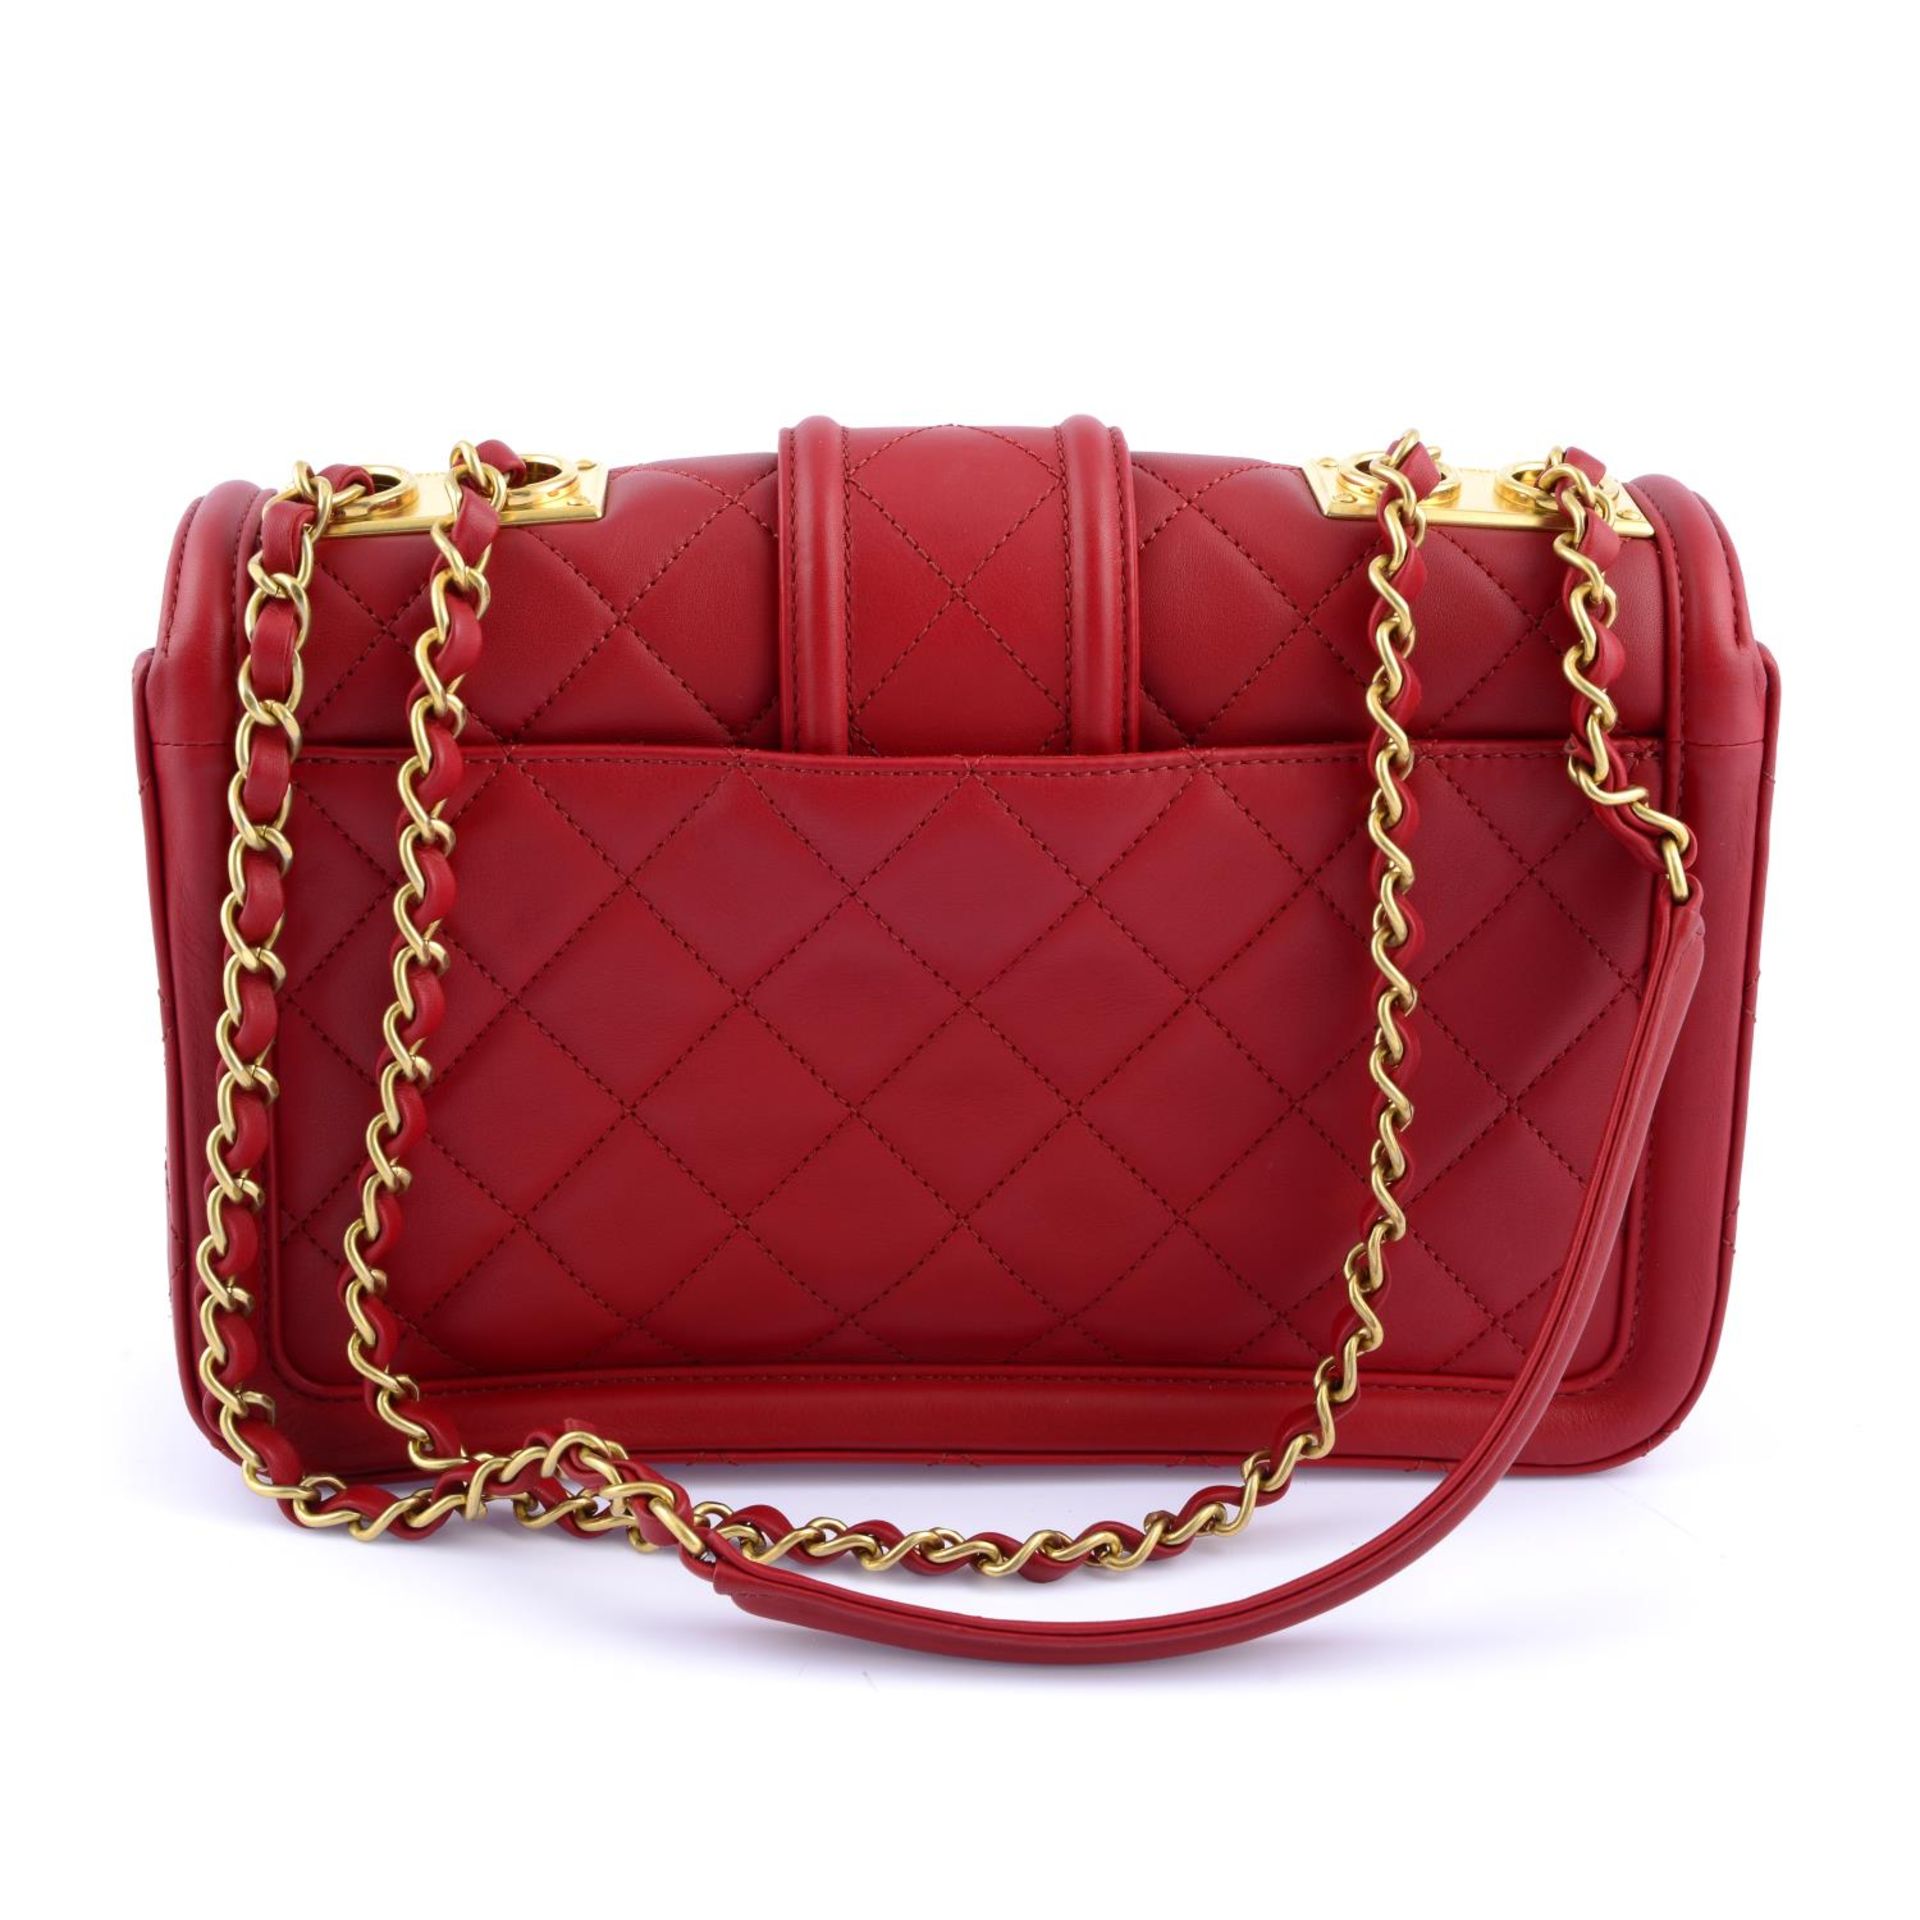 CHANEL - a red quilted Elegant handbag. - Bild 2 aus 4